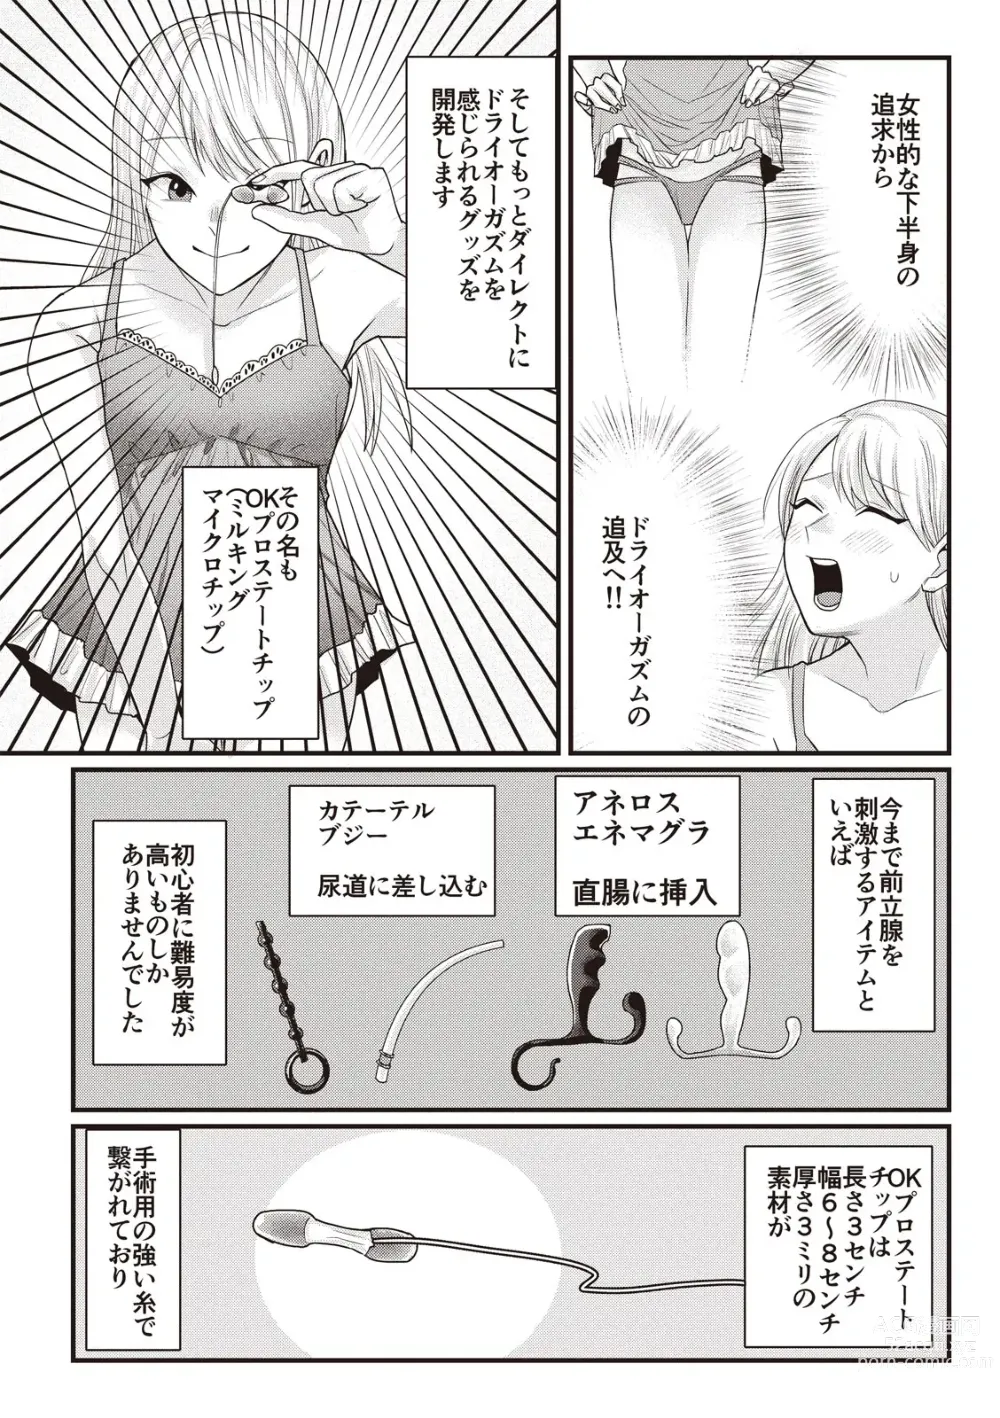 Page 117 of manga Manga de Furikaeru Otokonoko 10-nenshi